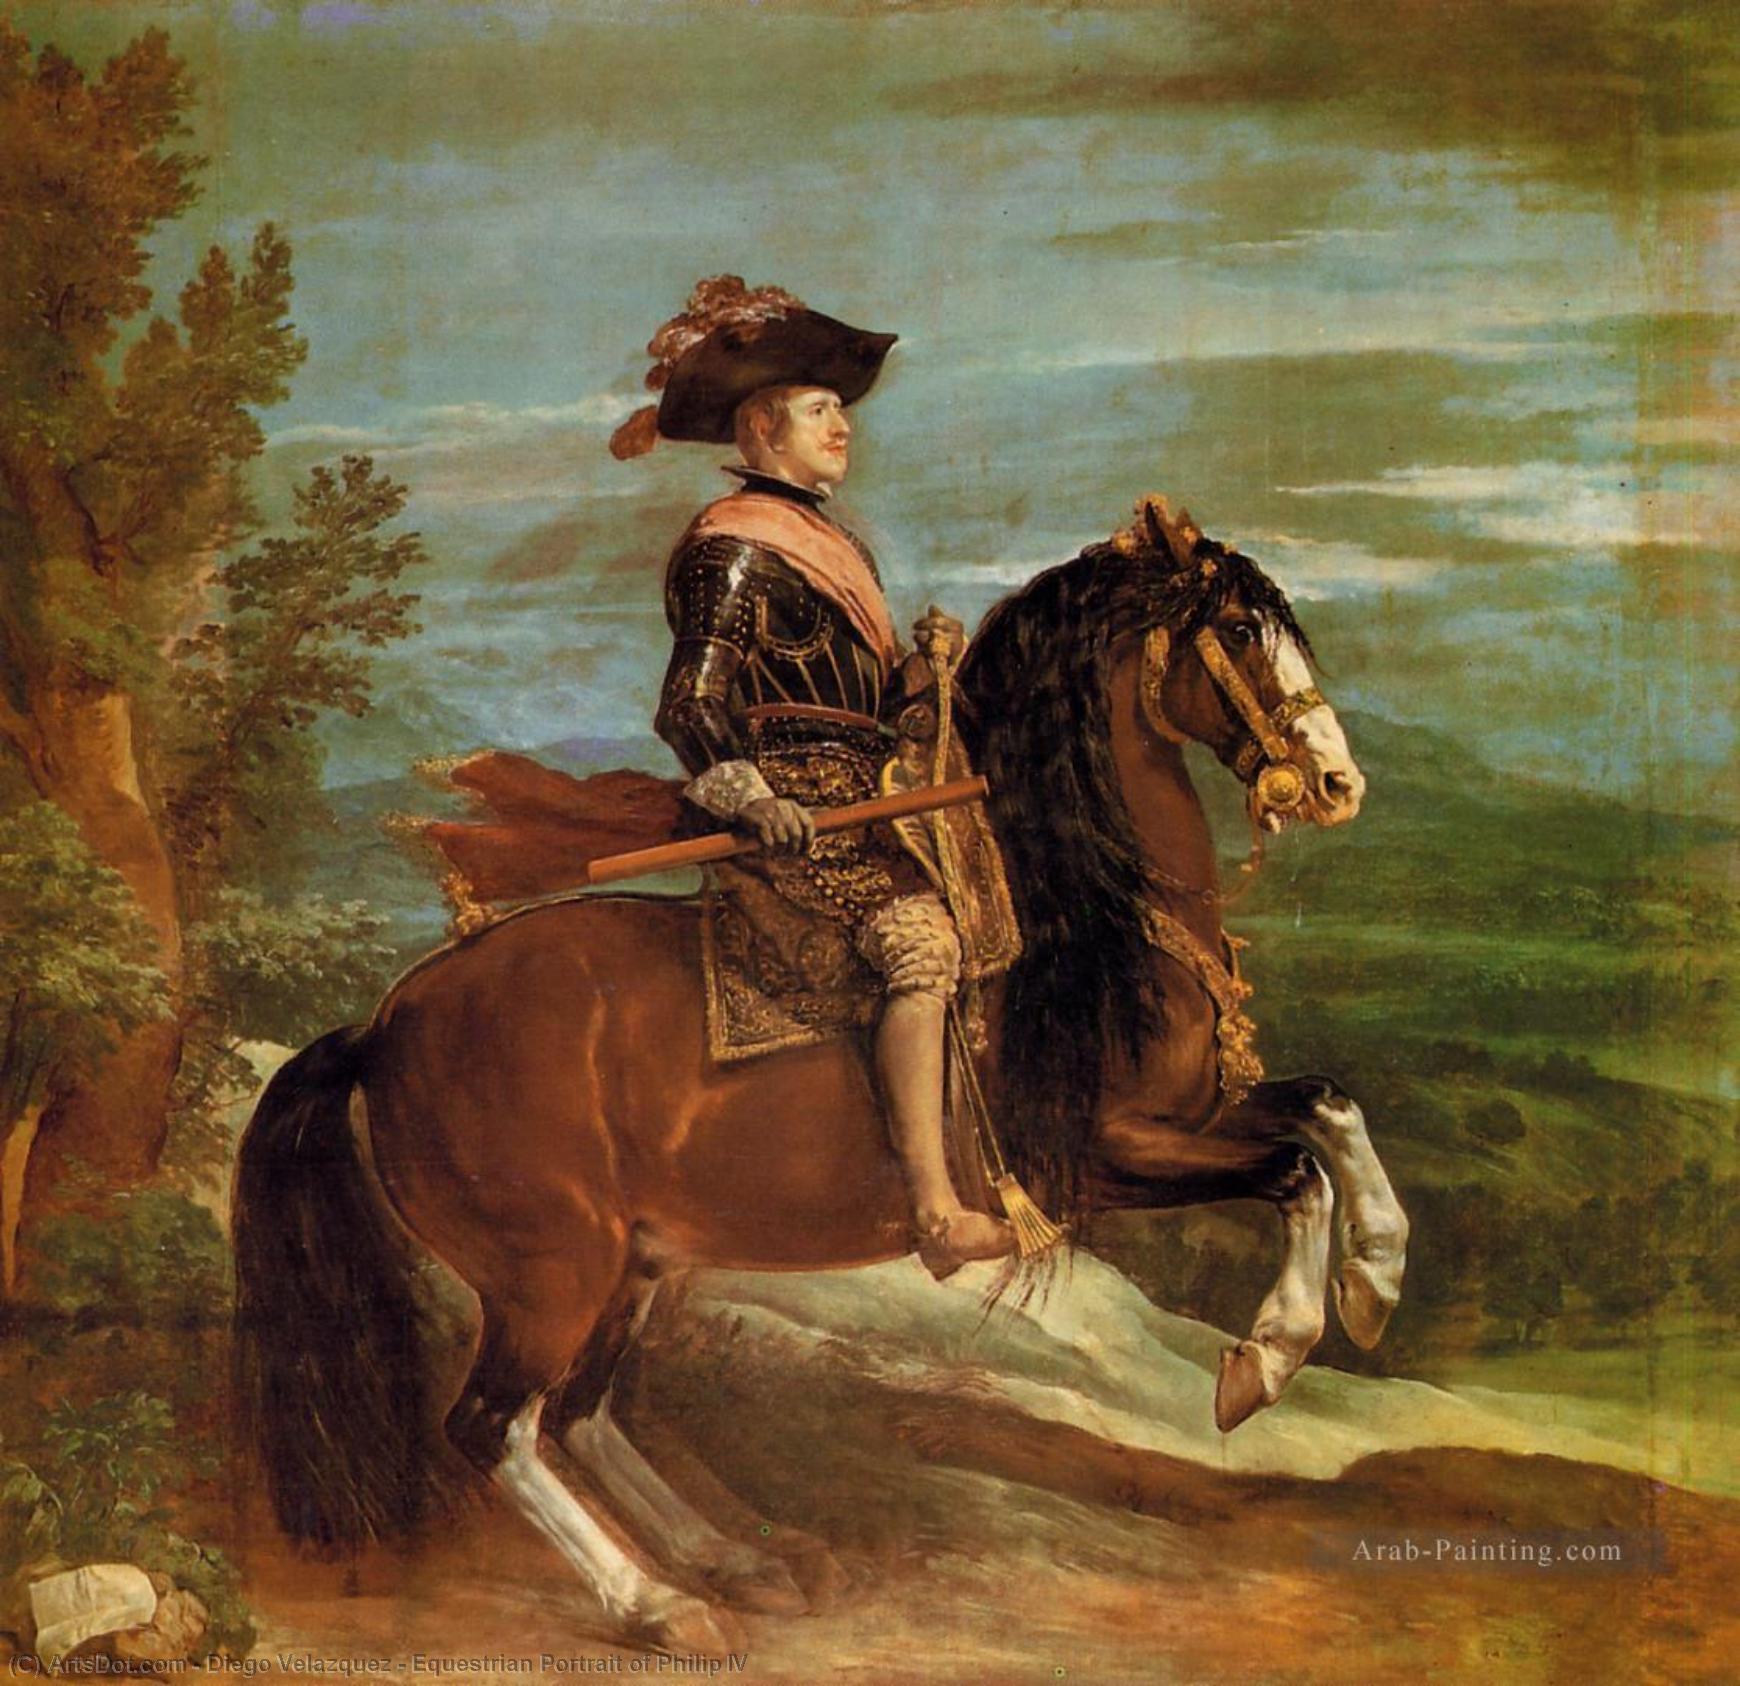 WikiOO.org - Енциклопедия за изящни изкуства - Живопис, Произведения на изкуството Diego Velazquez - Equestrian Portrait of Philip IV